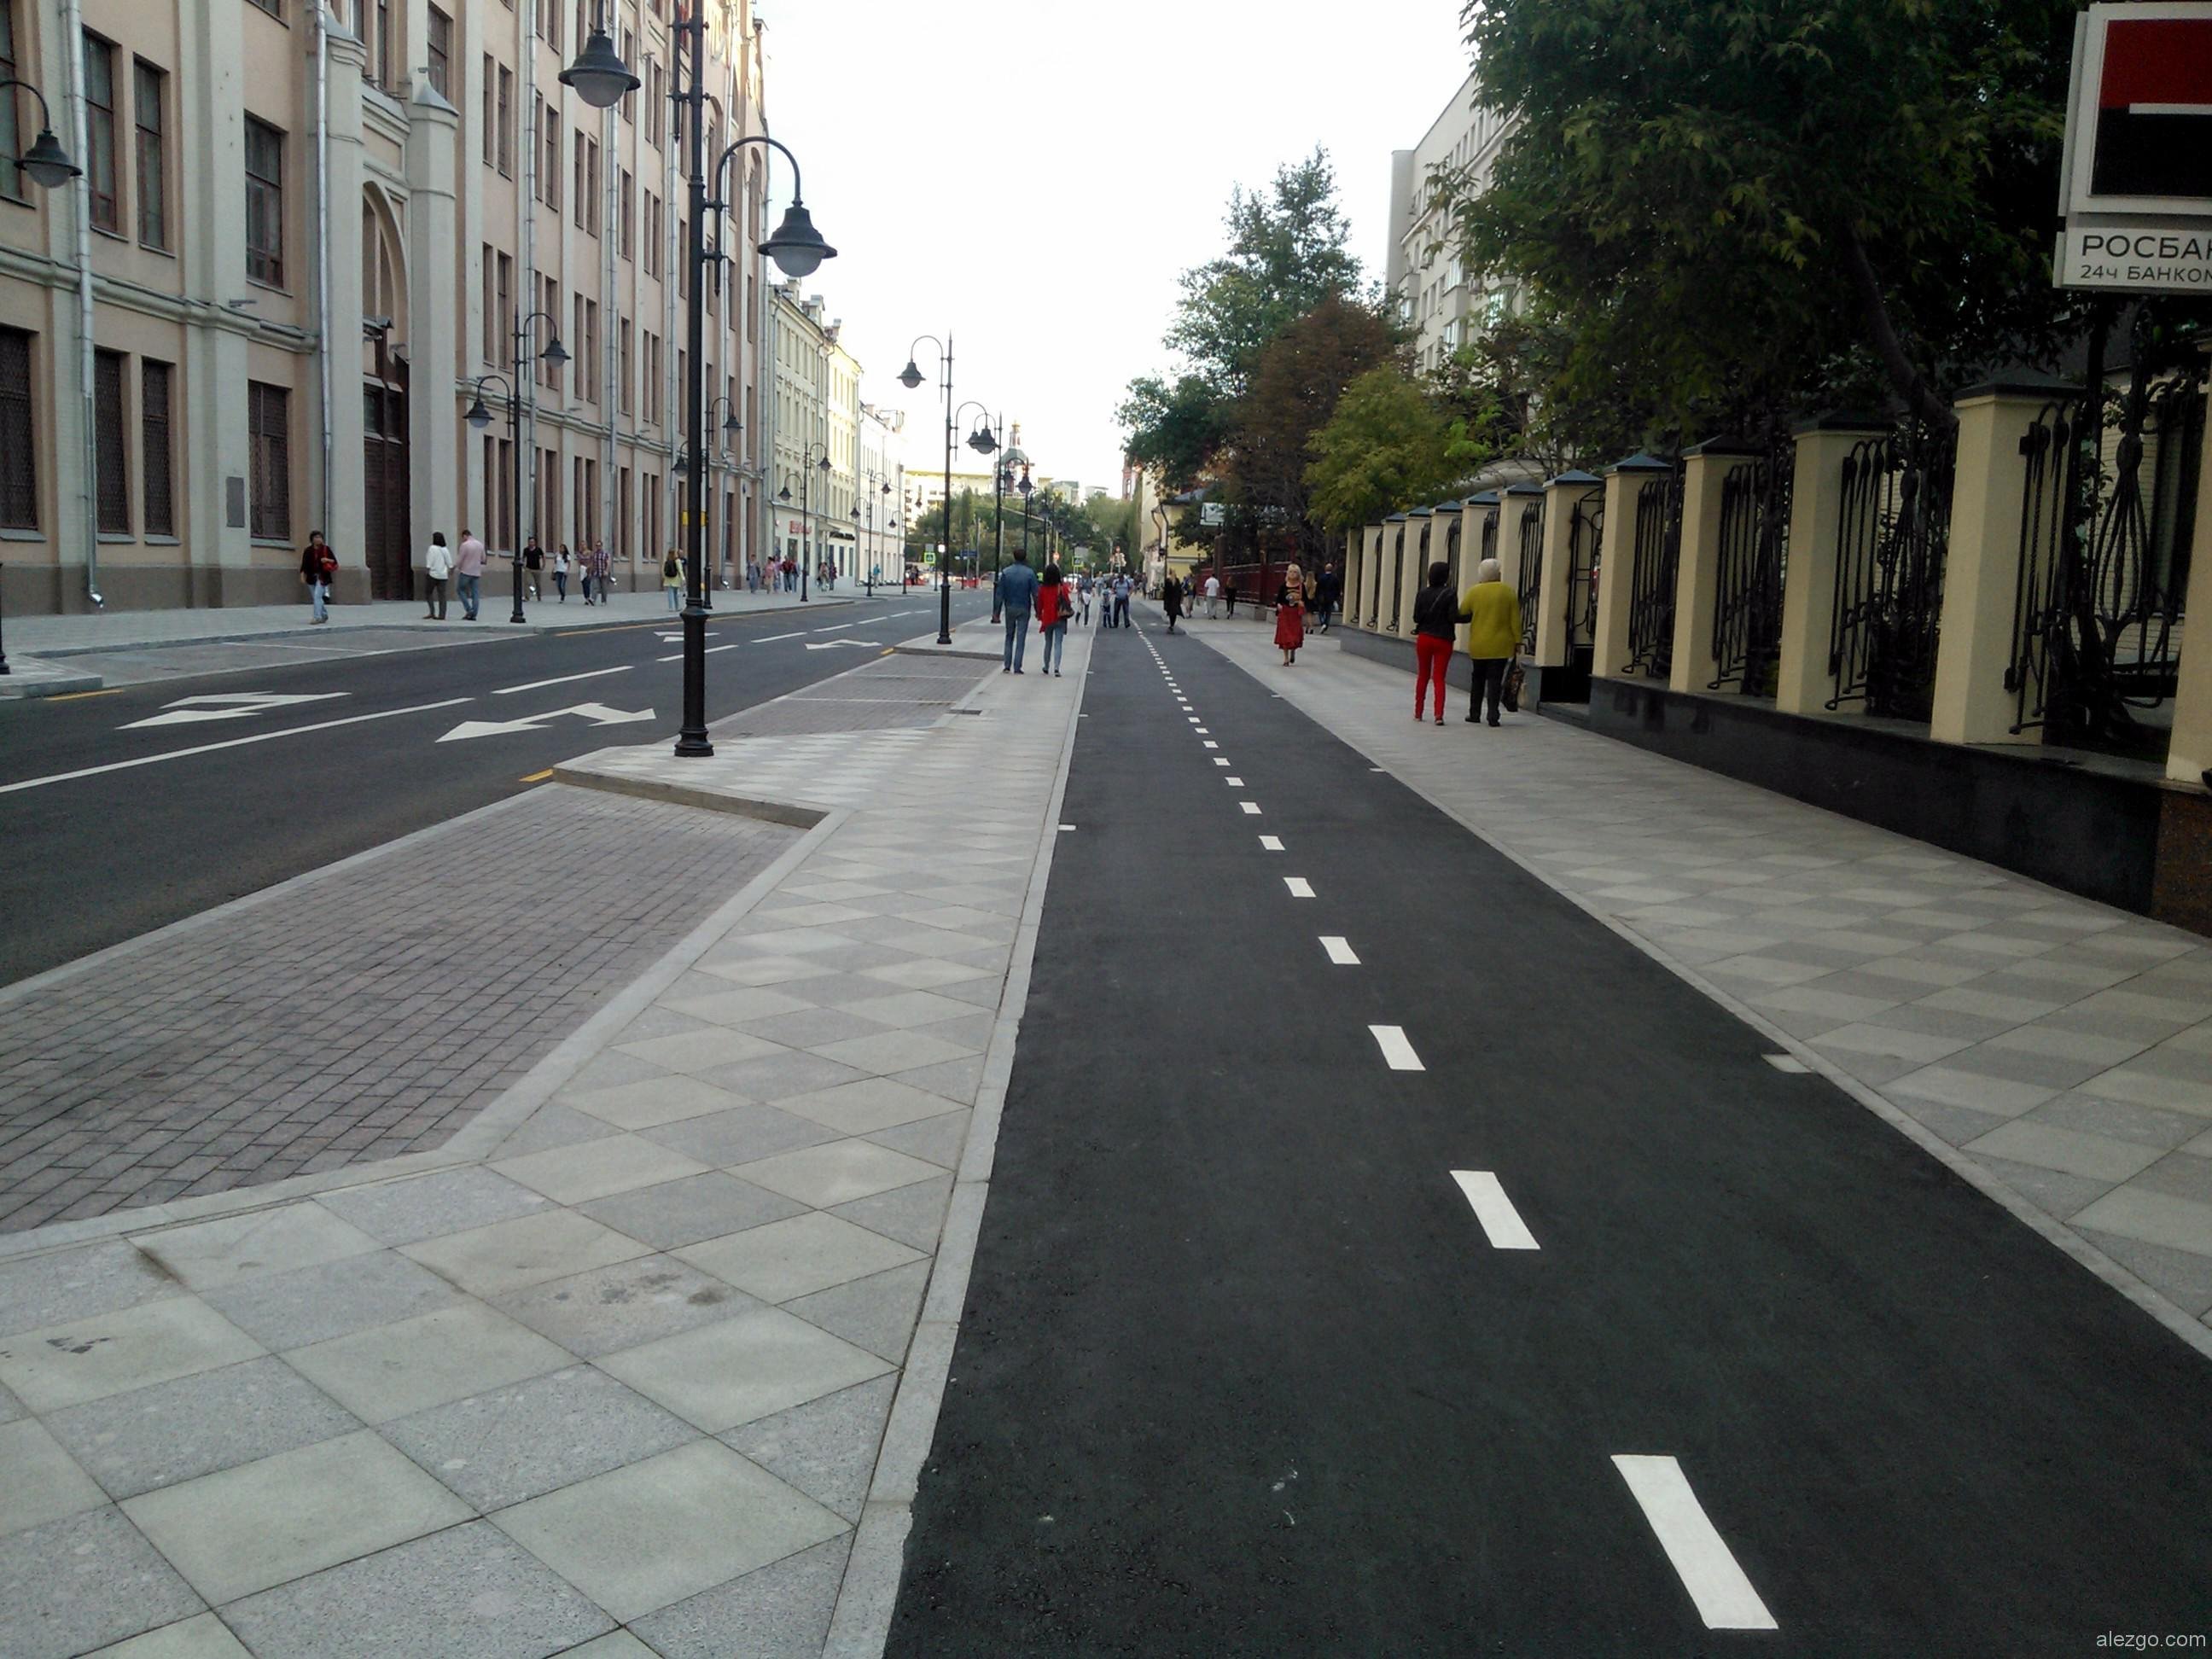 Части городской дороги. Велодорожка на улице Пятницкая. Велодорожки в Европе. Мощение проезжей части дороги. Пешеходная дорожка.